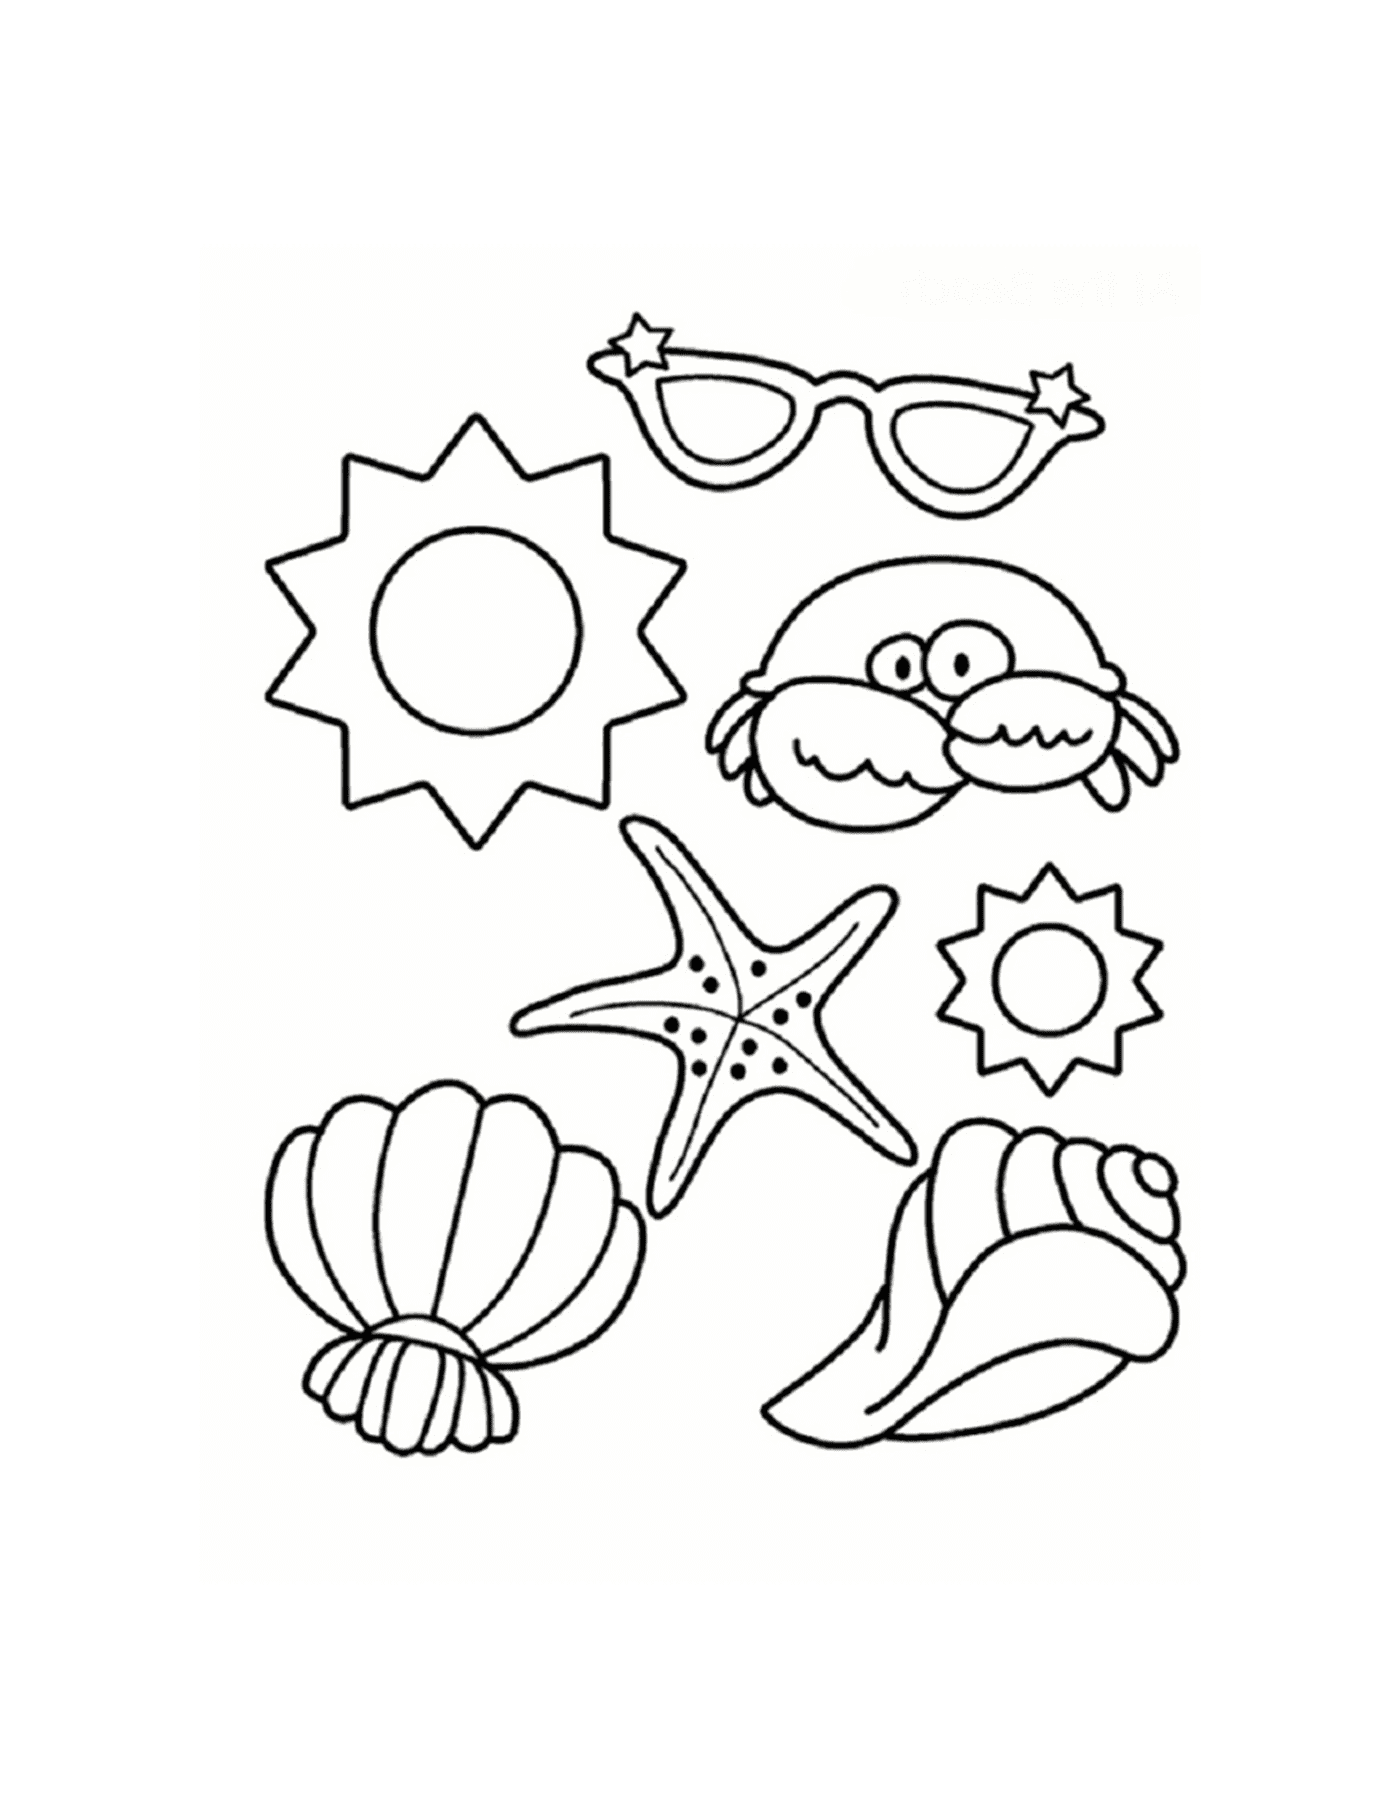   Coquillage, étoile de mer, crabe et lunettes de soleil sur la plage 